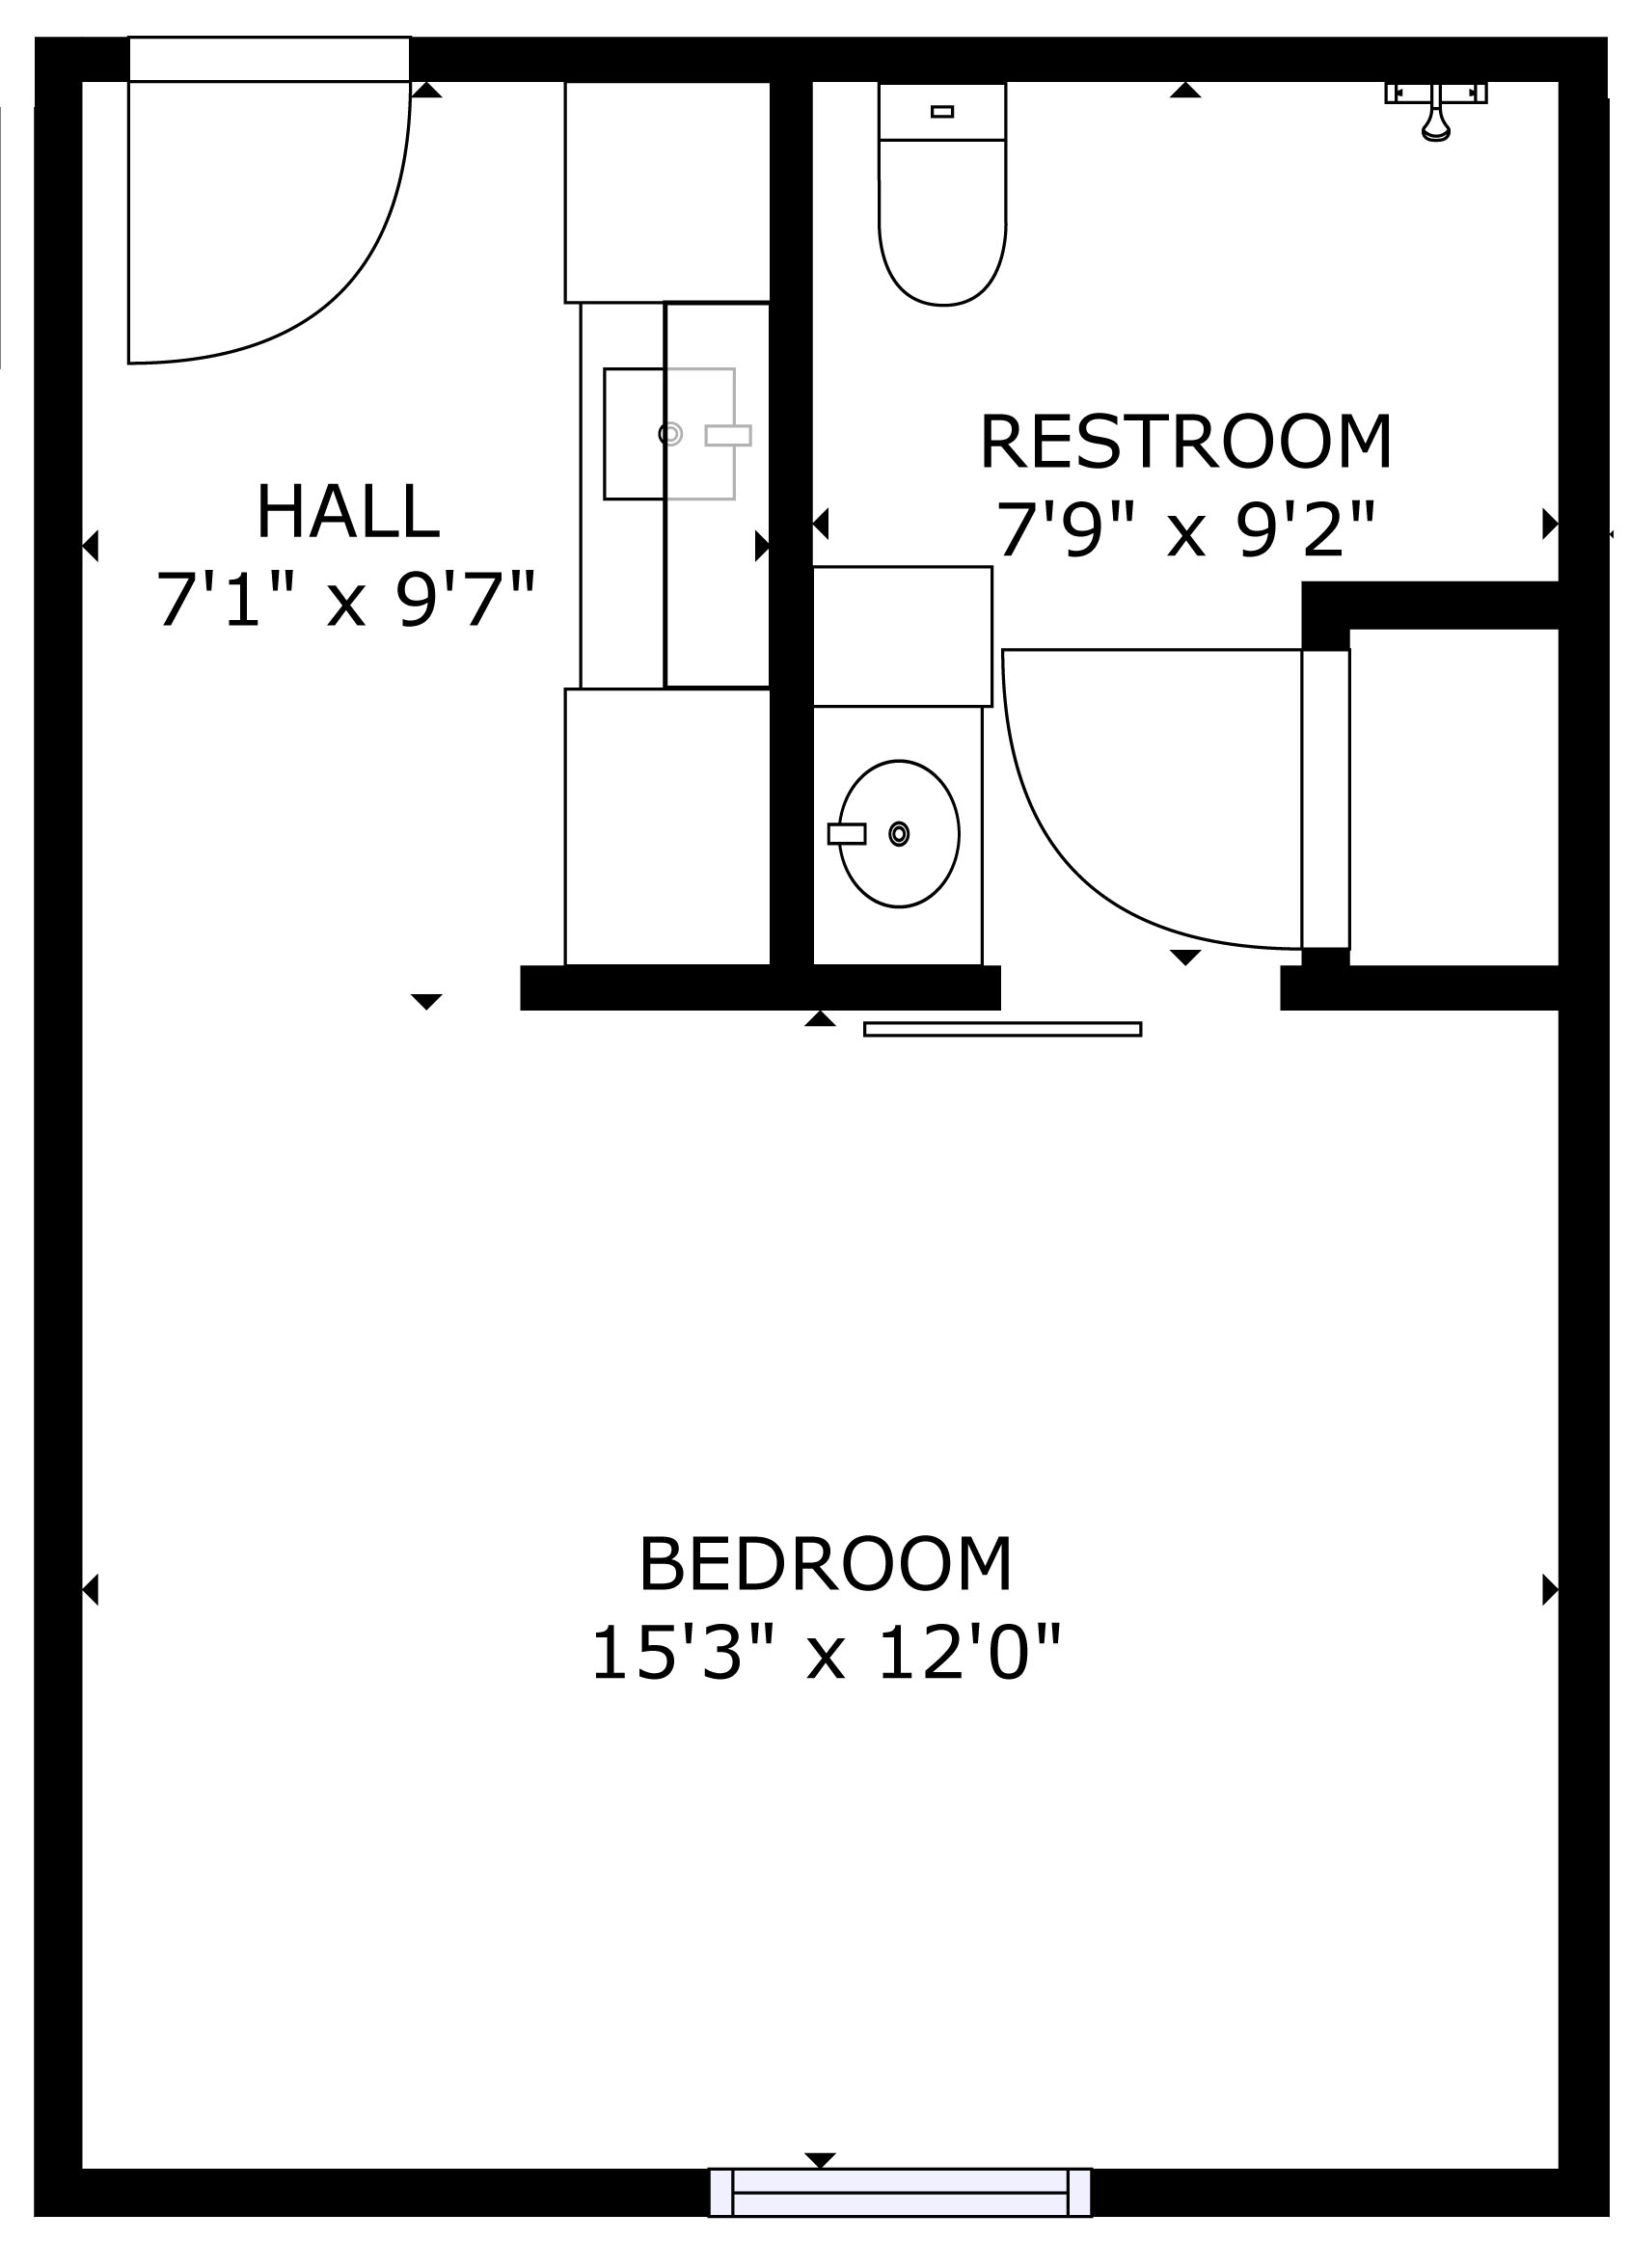 SS room floorplan